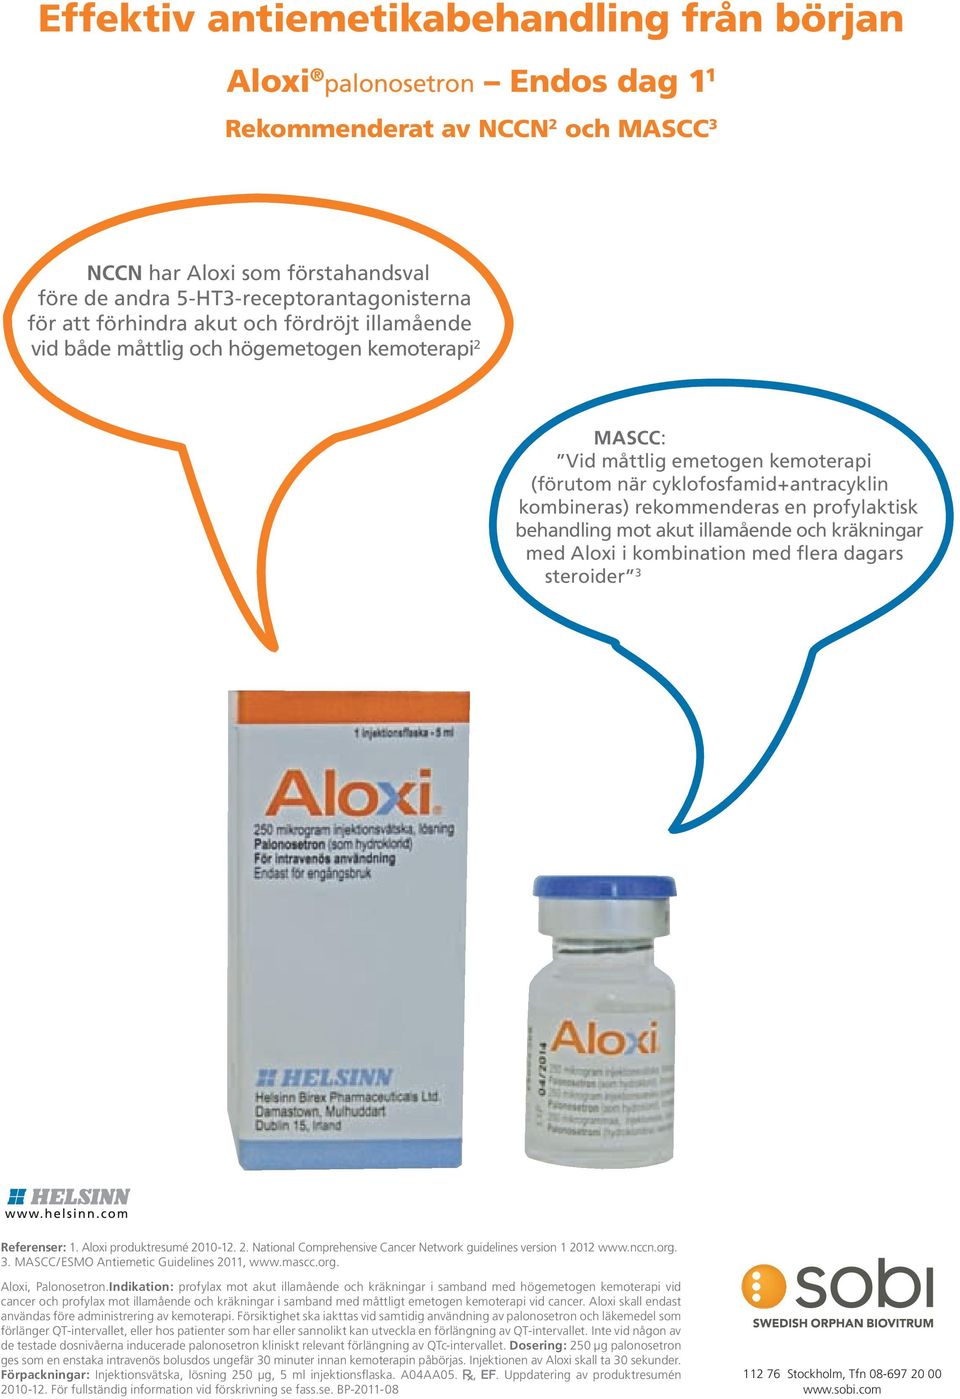 profylaktisk behandling mot akut illamående och kräkningar med Aloxi i kombination med flera dagars steroider 3 Referenser: 1. Aloxi produktresumé 20